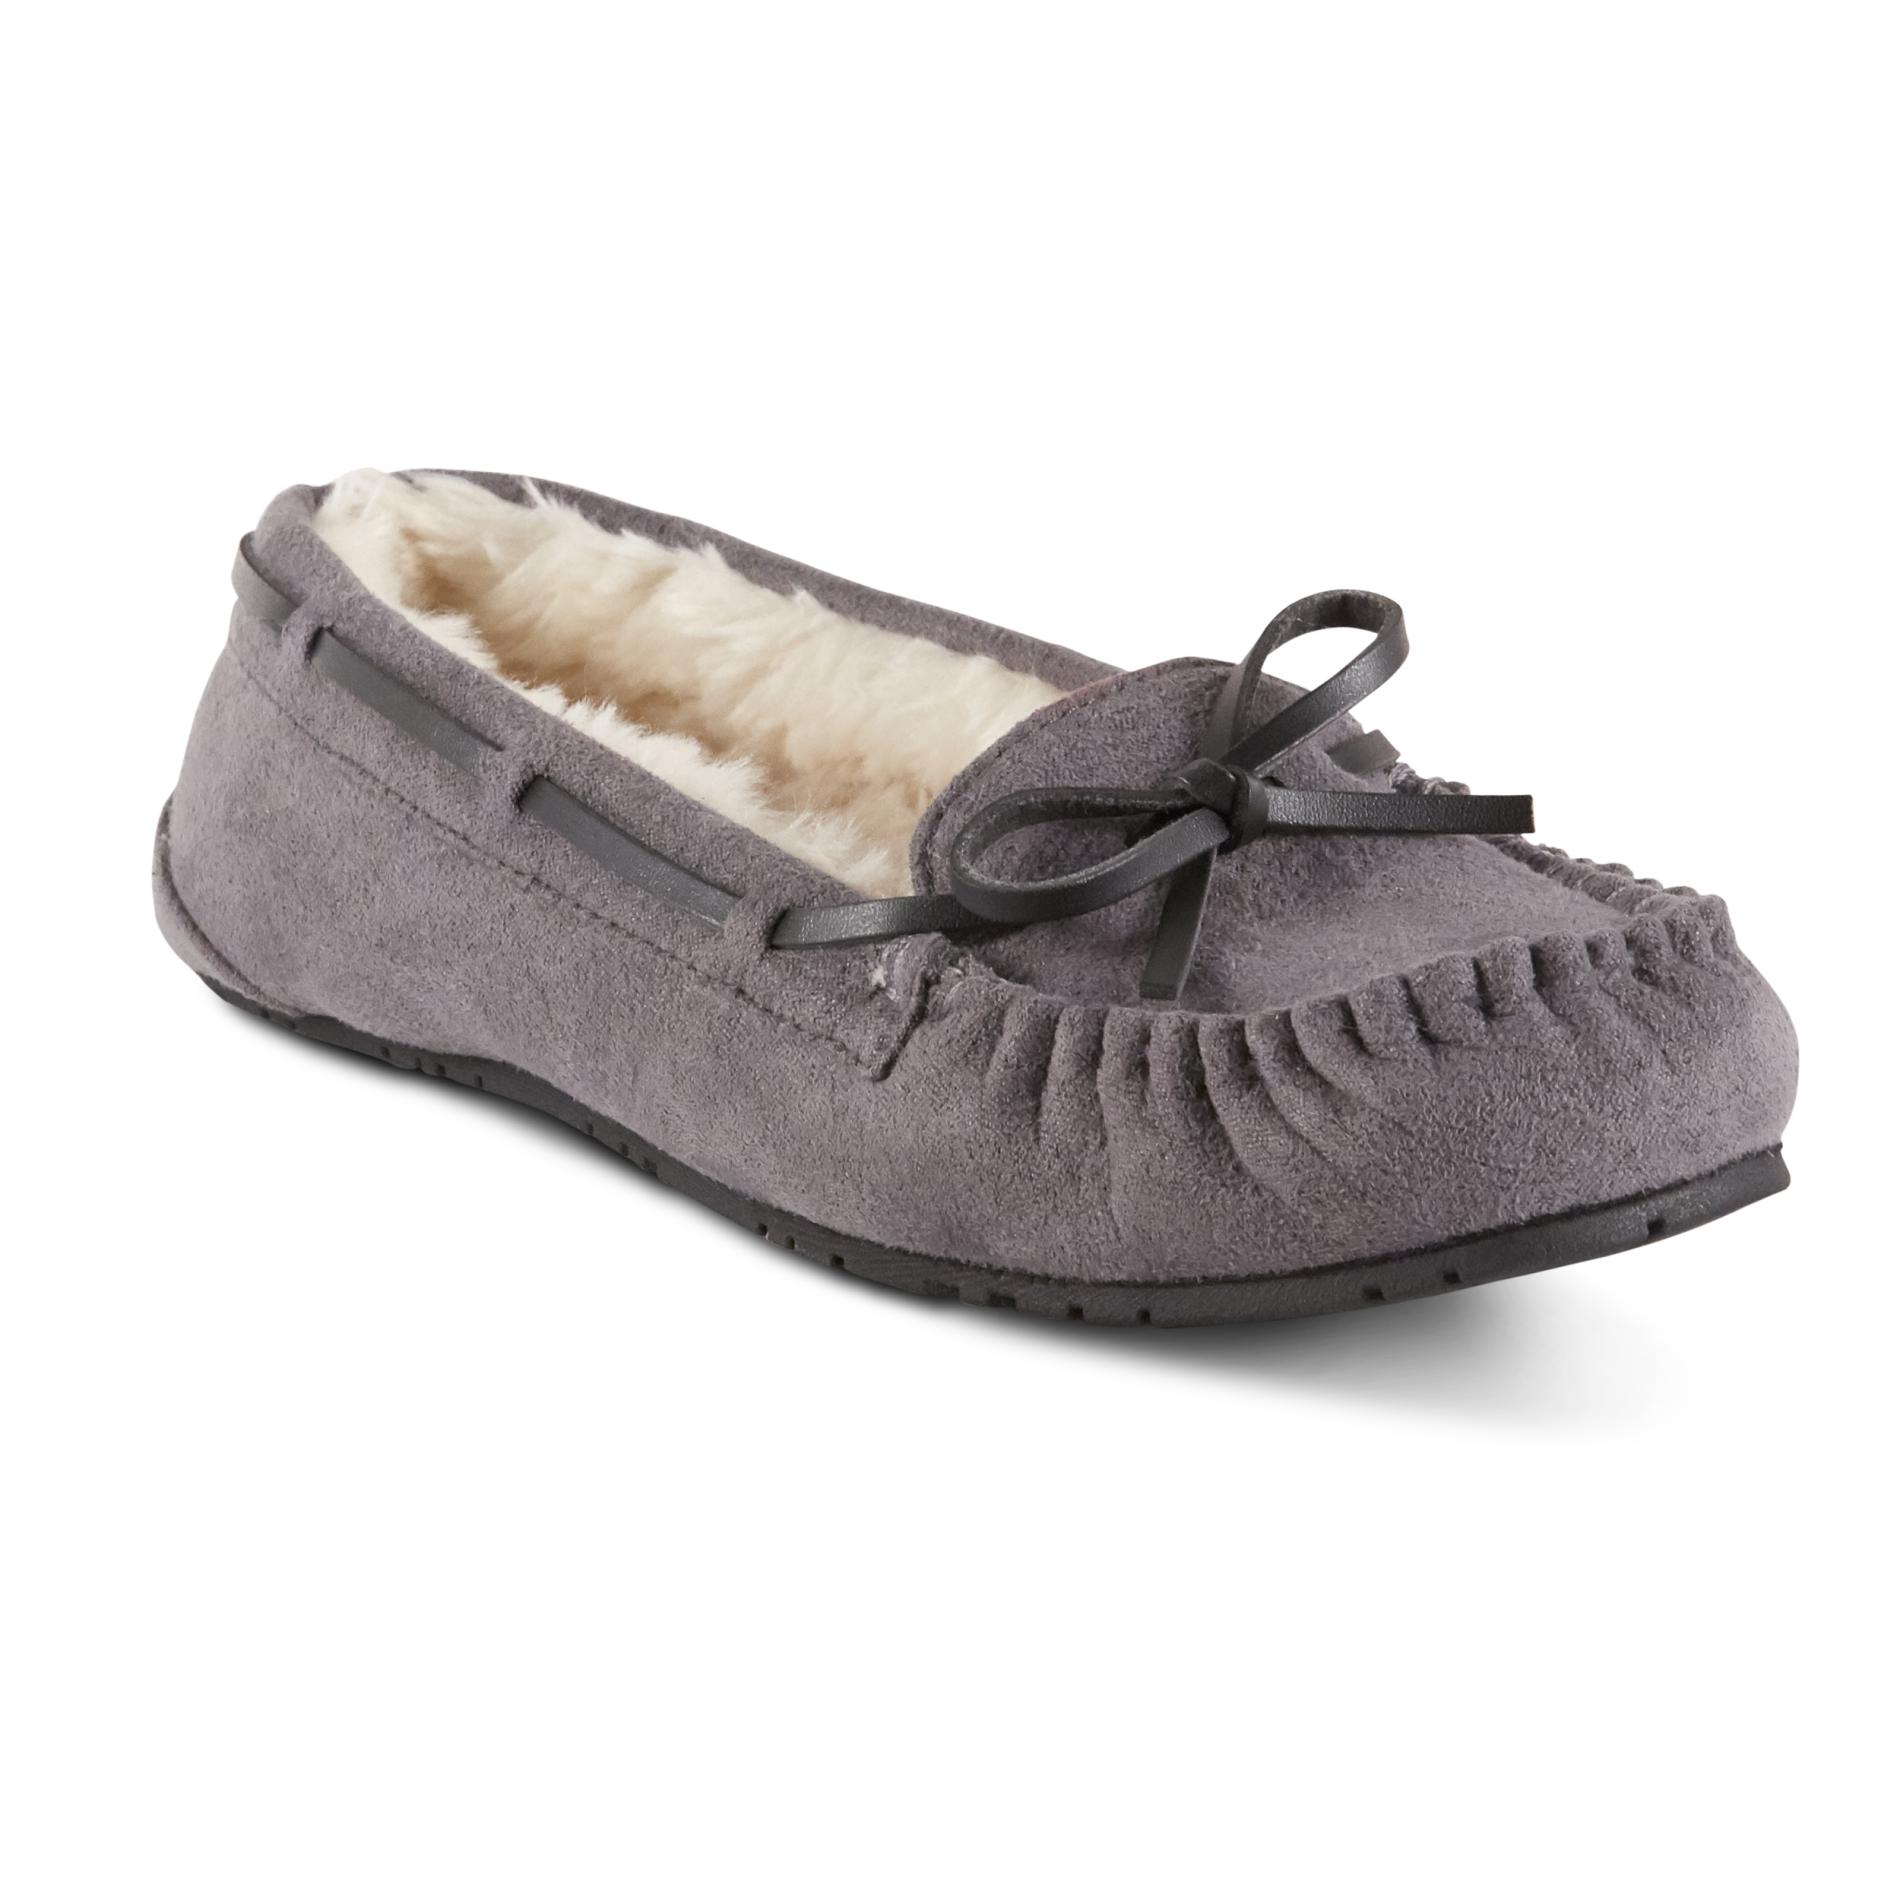 winter slippers kmart